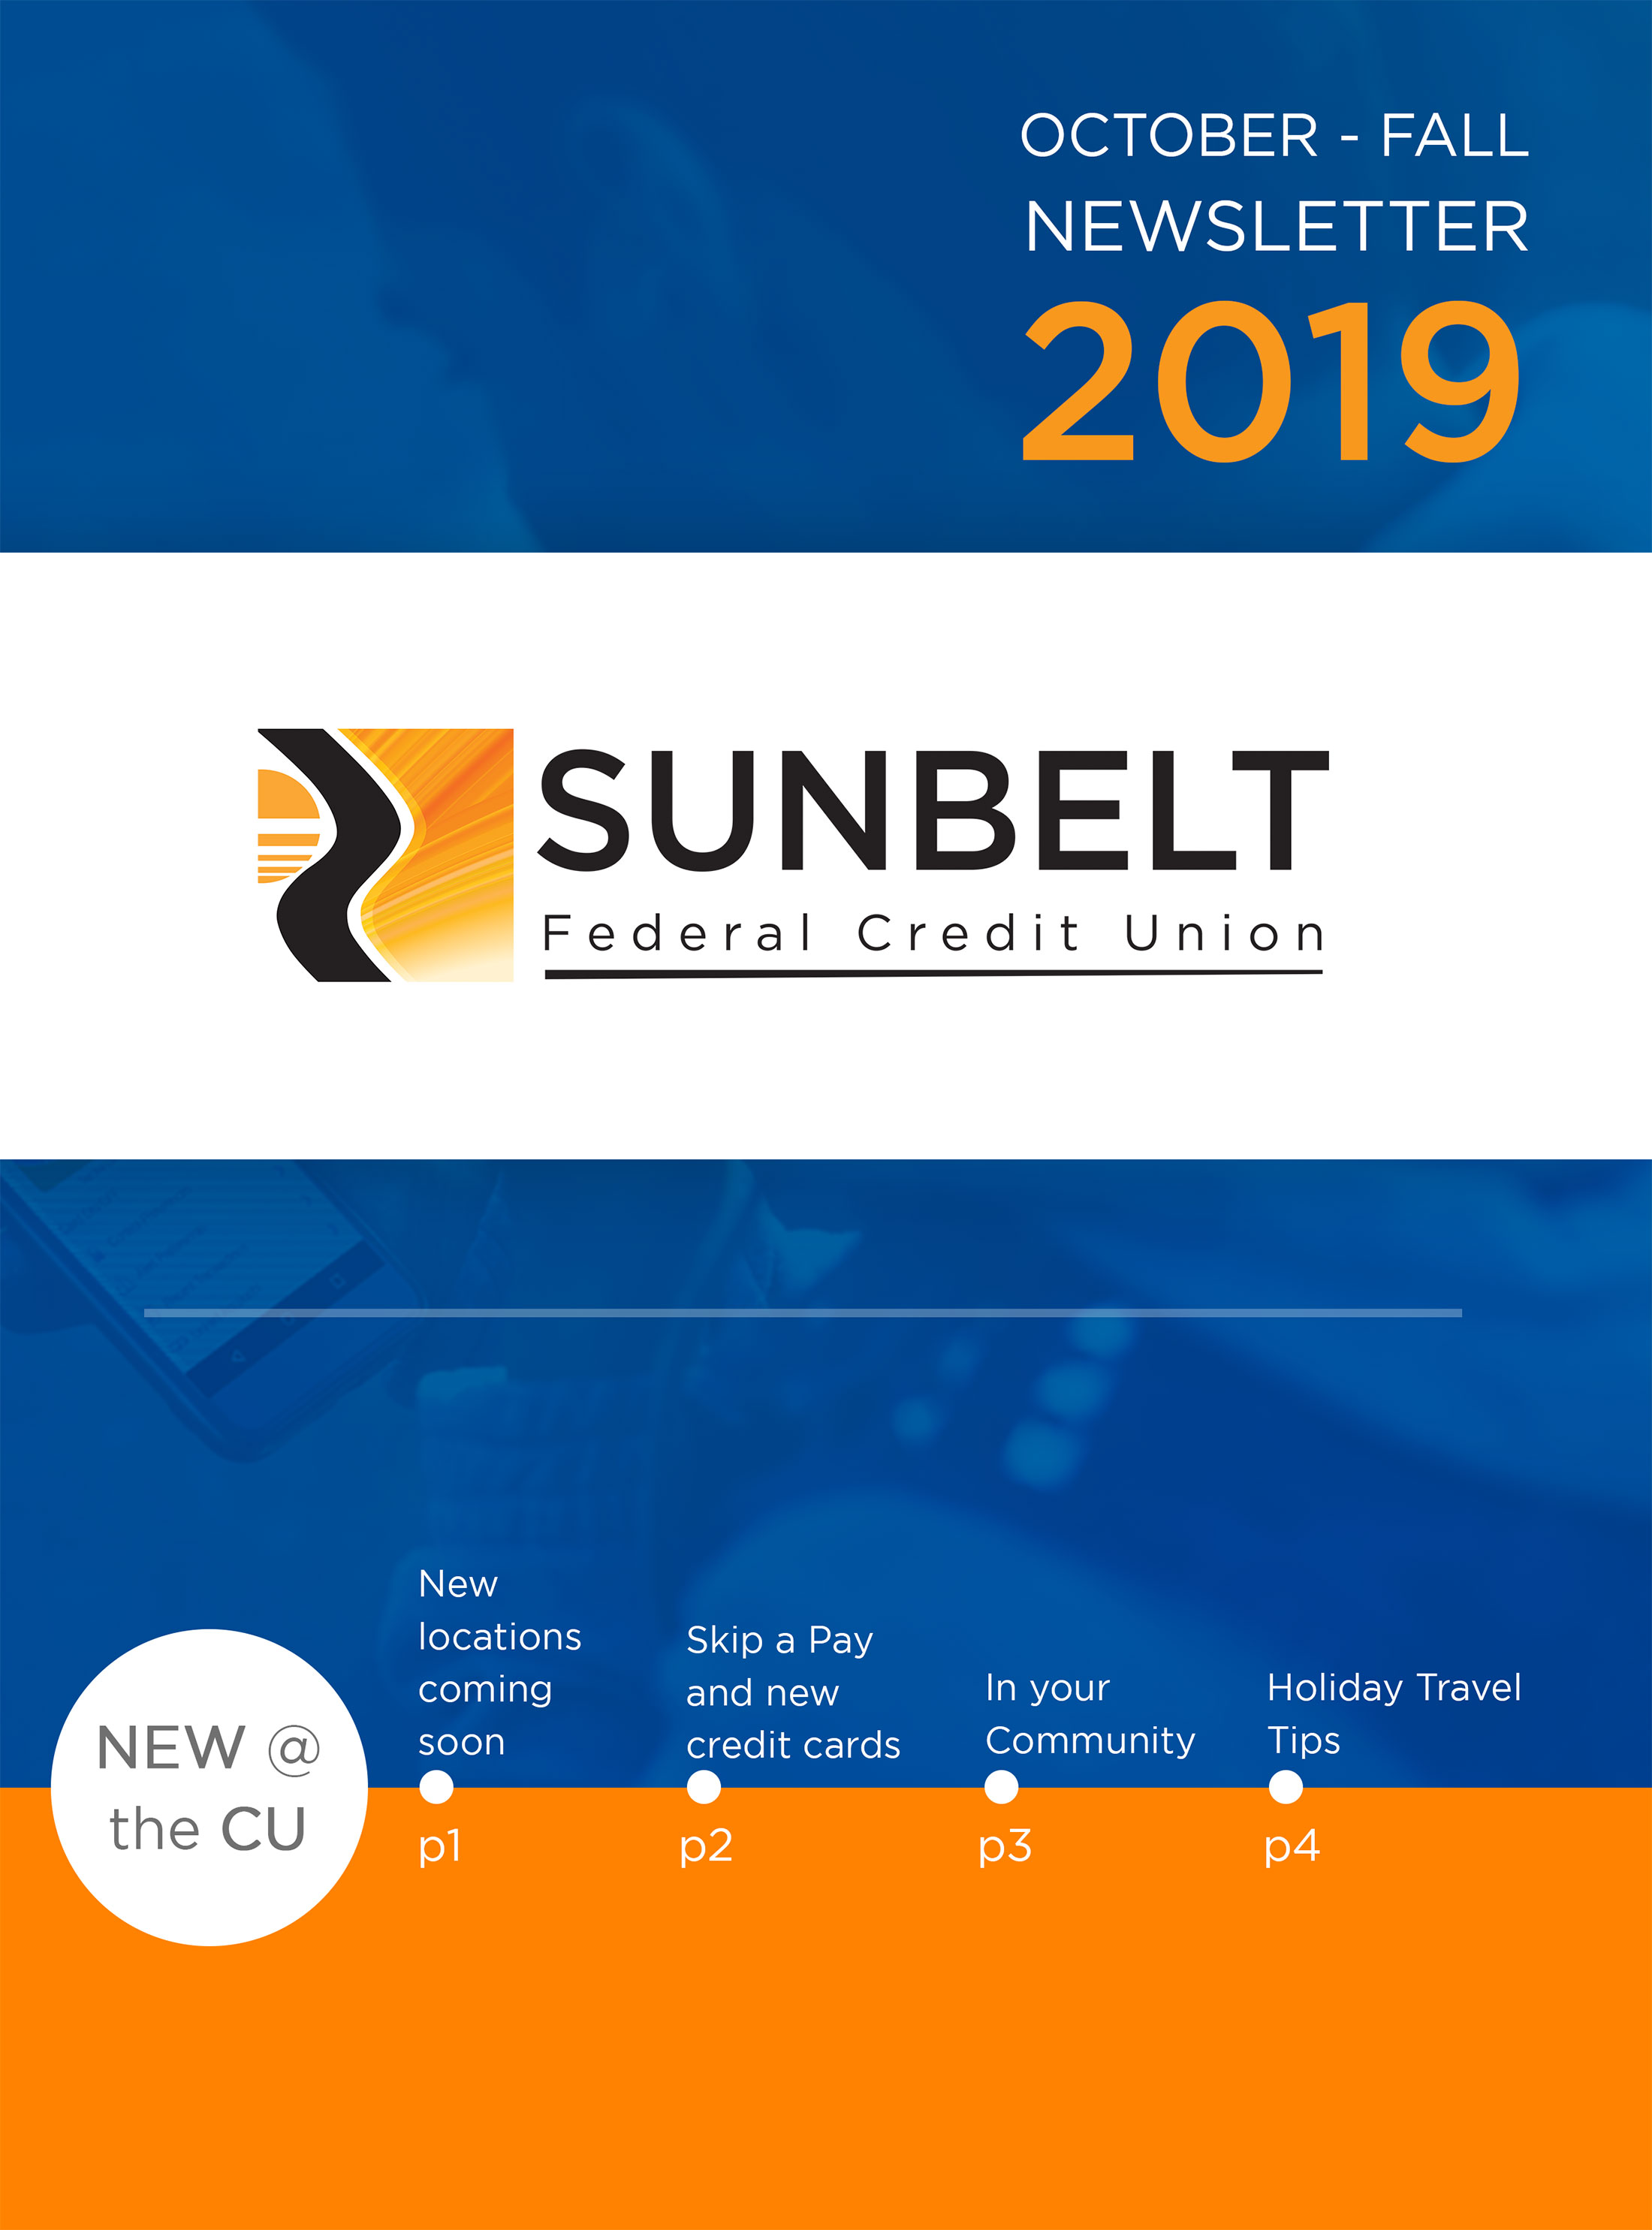 Sunbelt FCU Fall 2019 newsletter